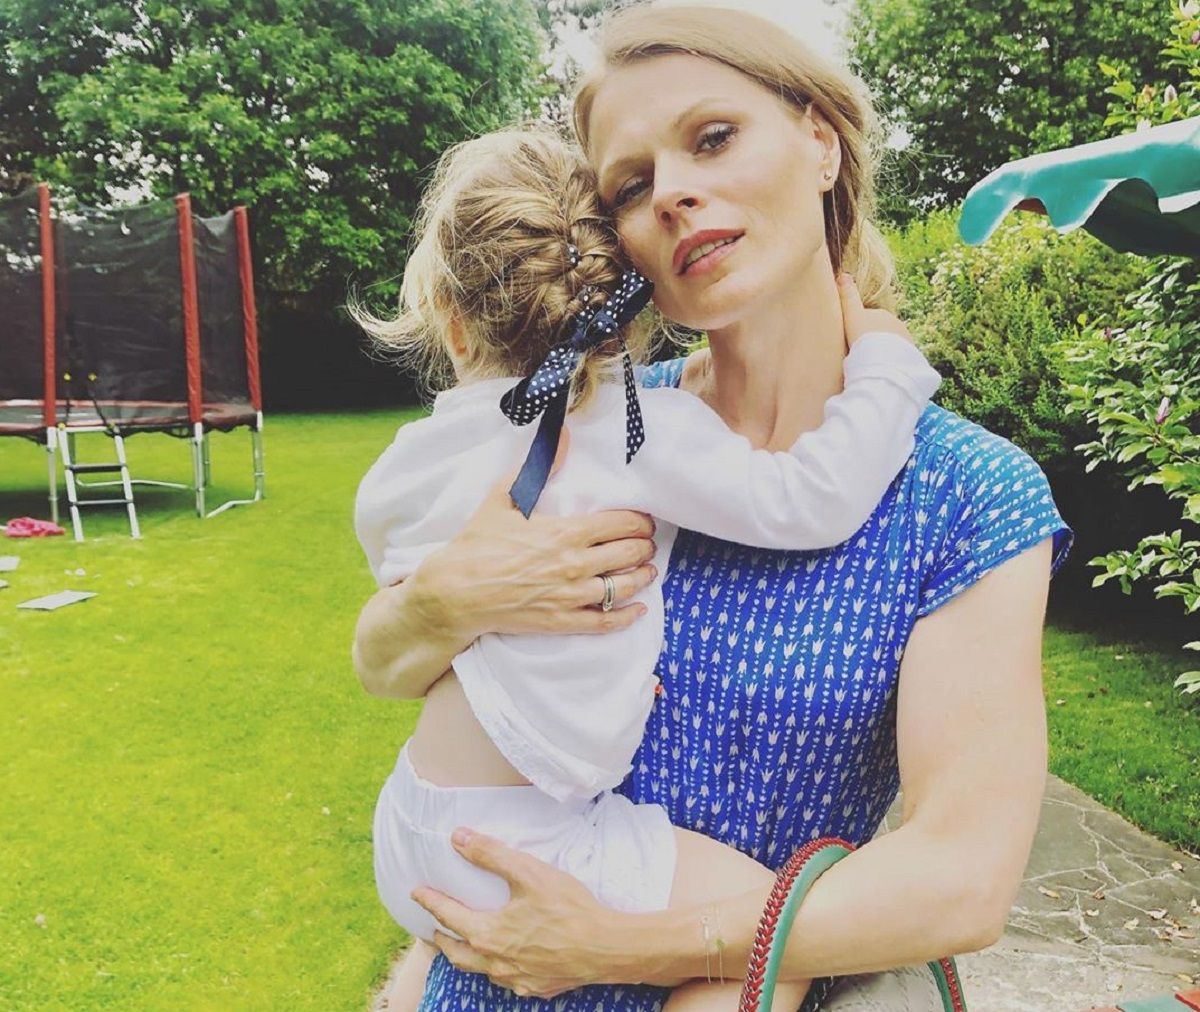 Оля Фреймут поздравила дочь Евдокию с 2-летием: фото девочки